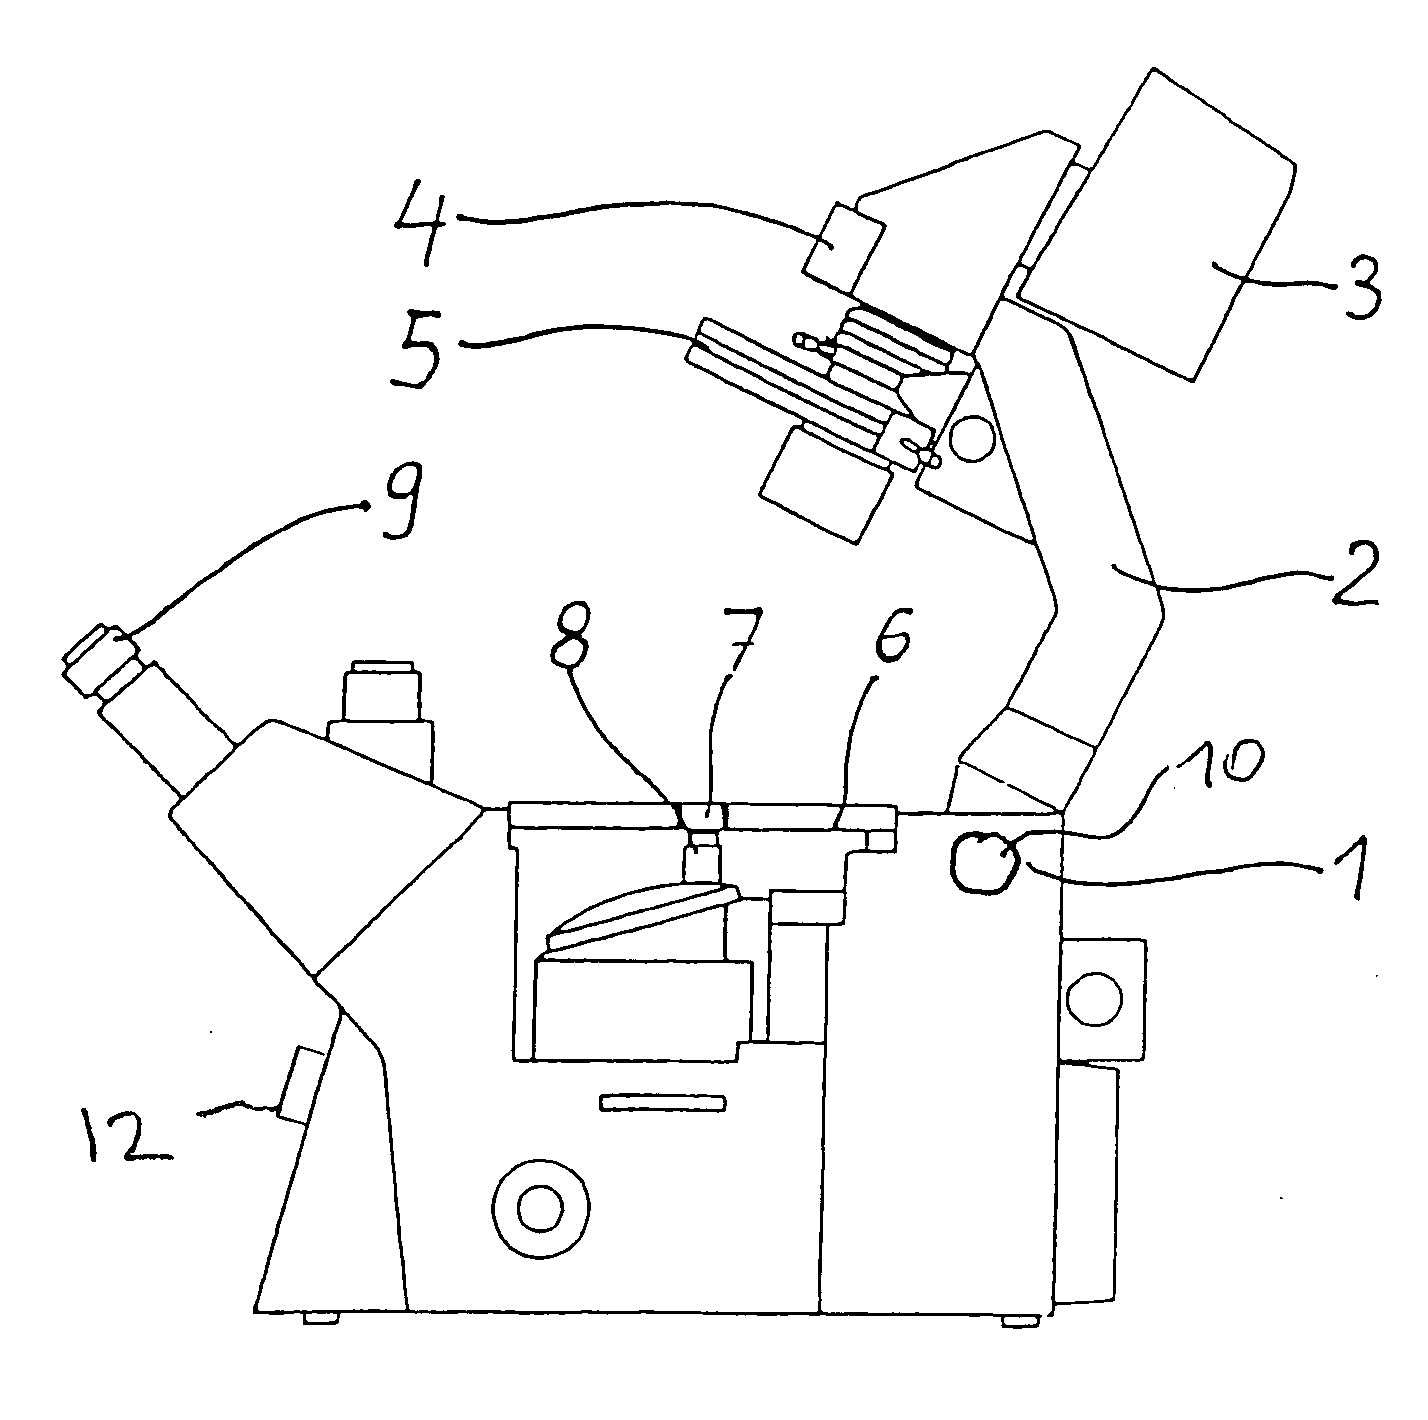 Arrangement for tilting an illumination carrier on an inverse light microscope